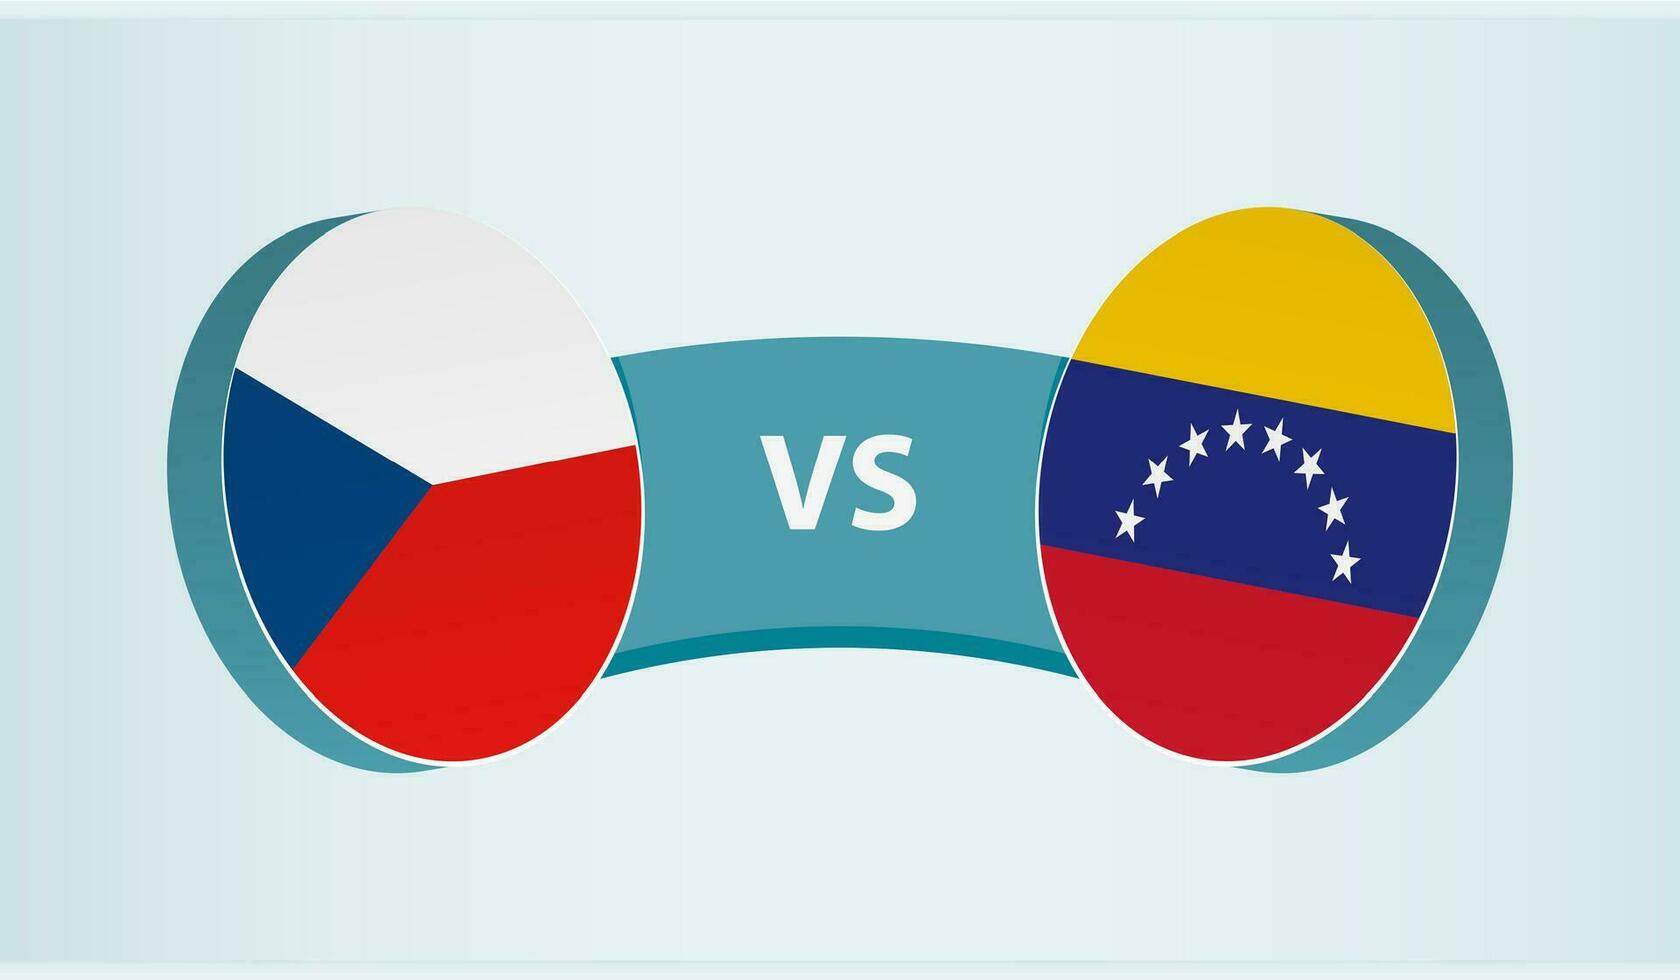 Czech Republic versus Venezuela, team sports competition concept. vector